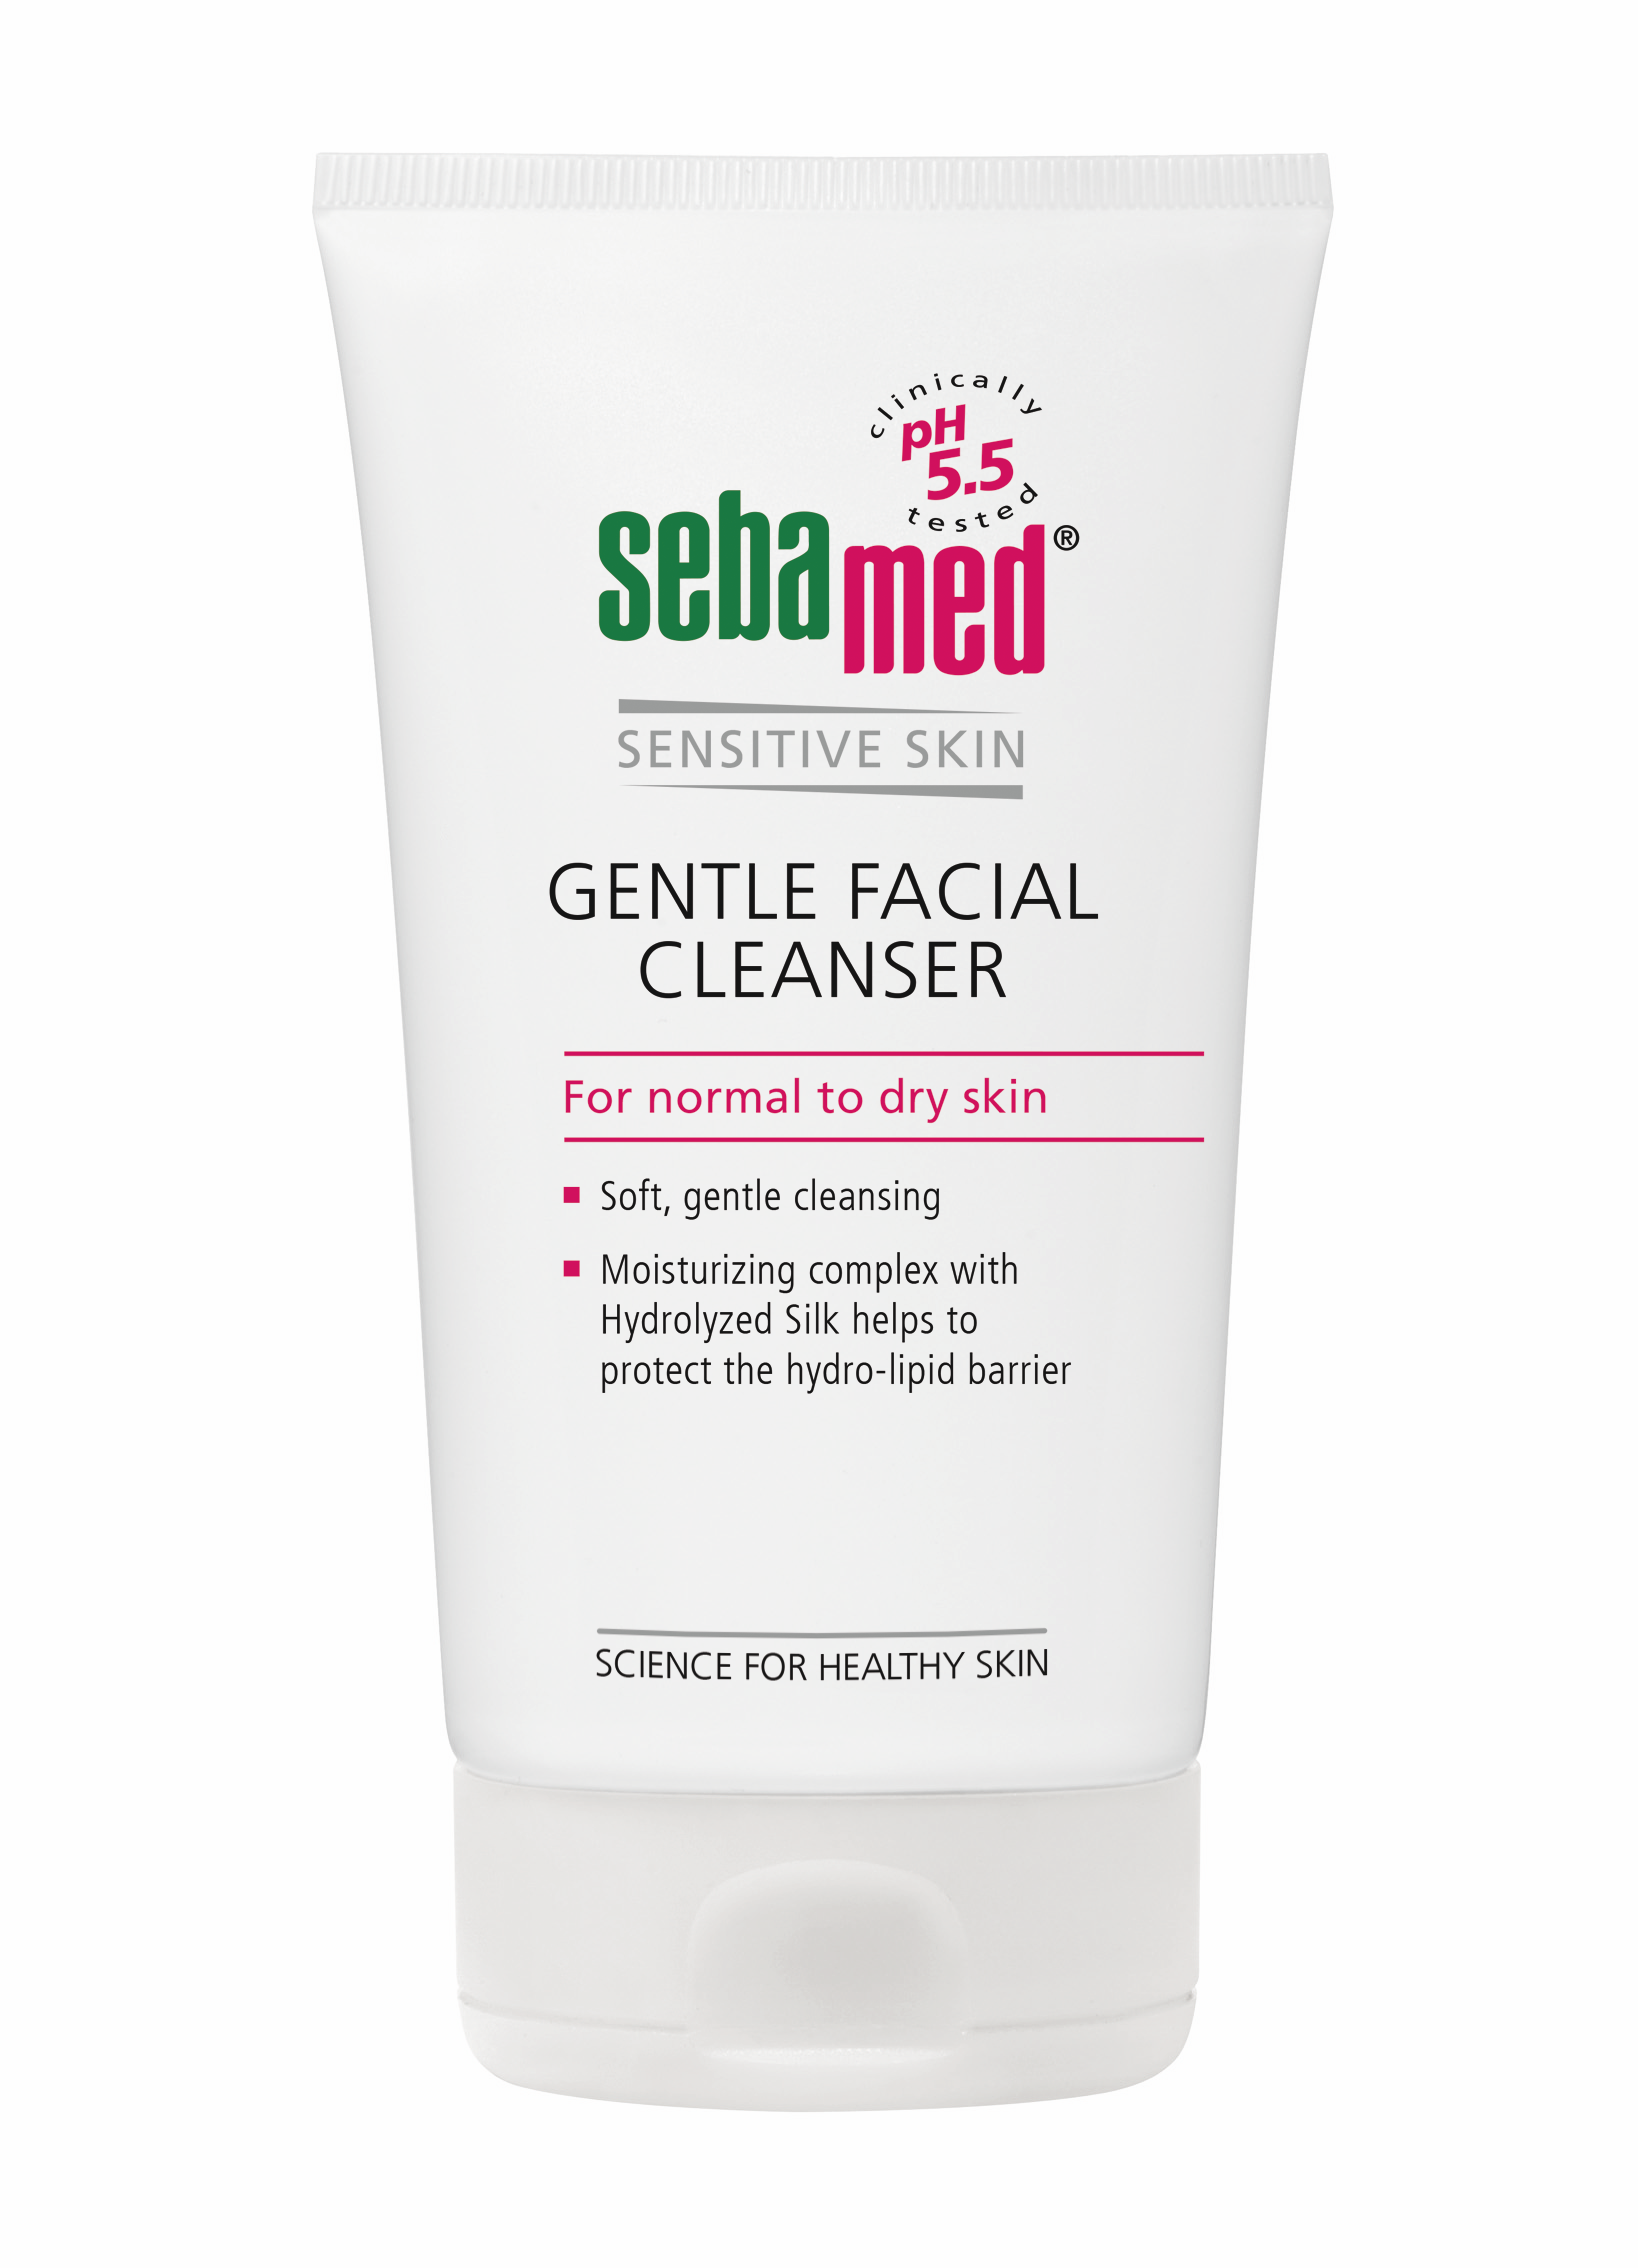 Îngrijirea pielii - Sebamed Sensitive Skin Gel dermatologic de curățare pentru față - ten uscat și normal * 150 ml, clinicafarm.ro